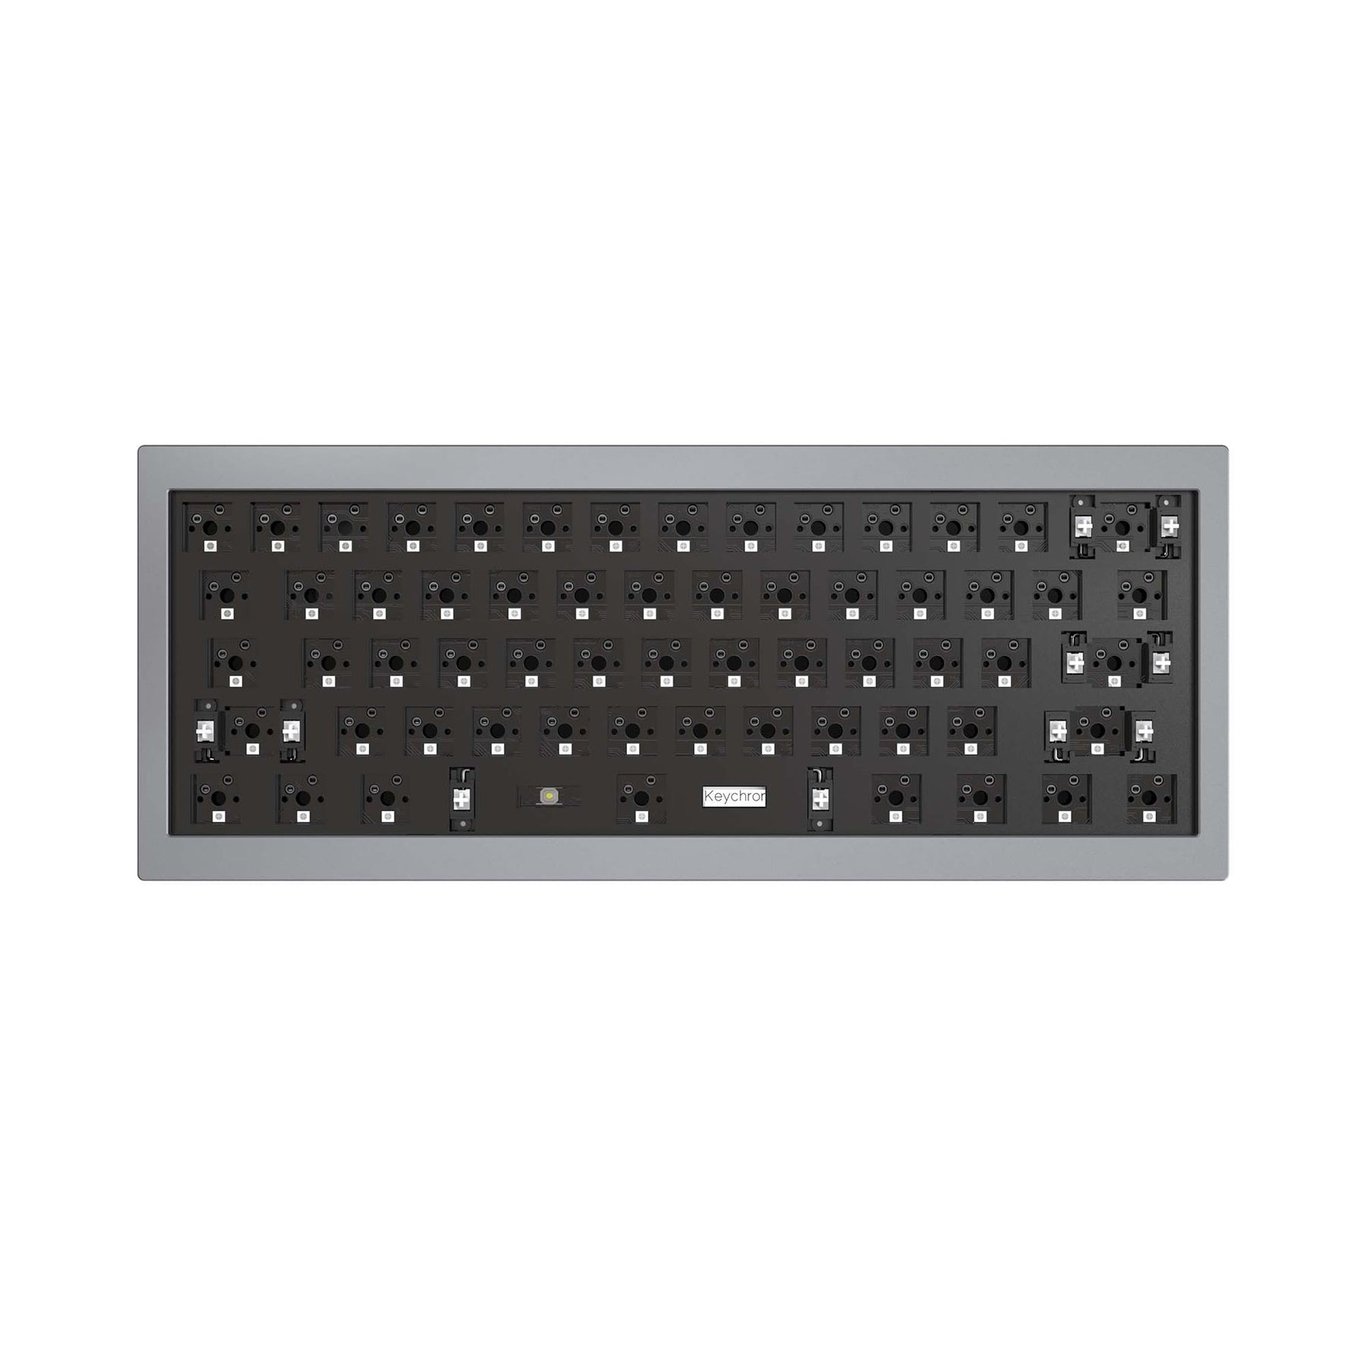 Keychron Q4A2 60% QMK 自定義機械鍵盤 - Barebone 準成品 (太空灰色)